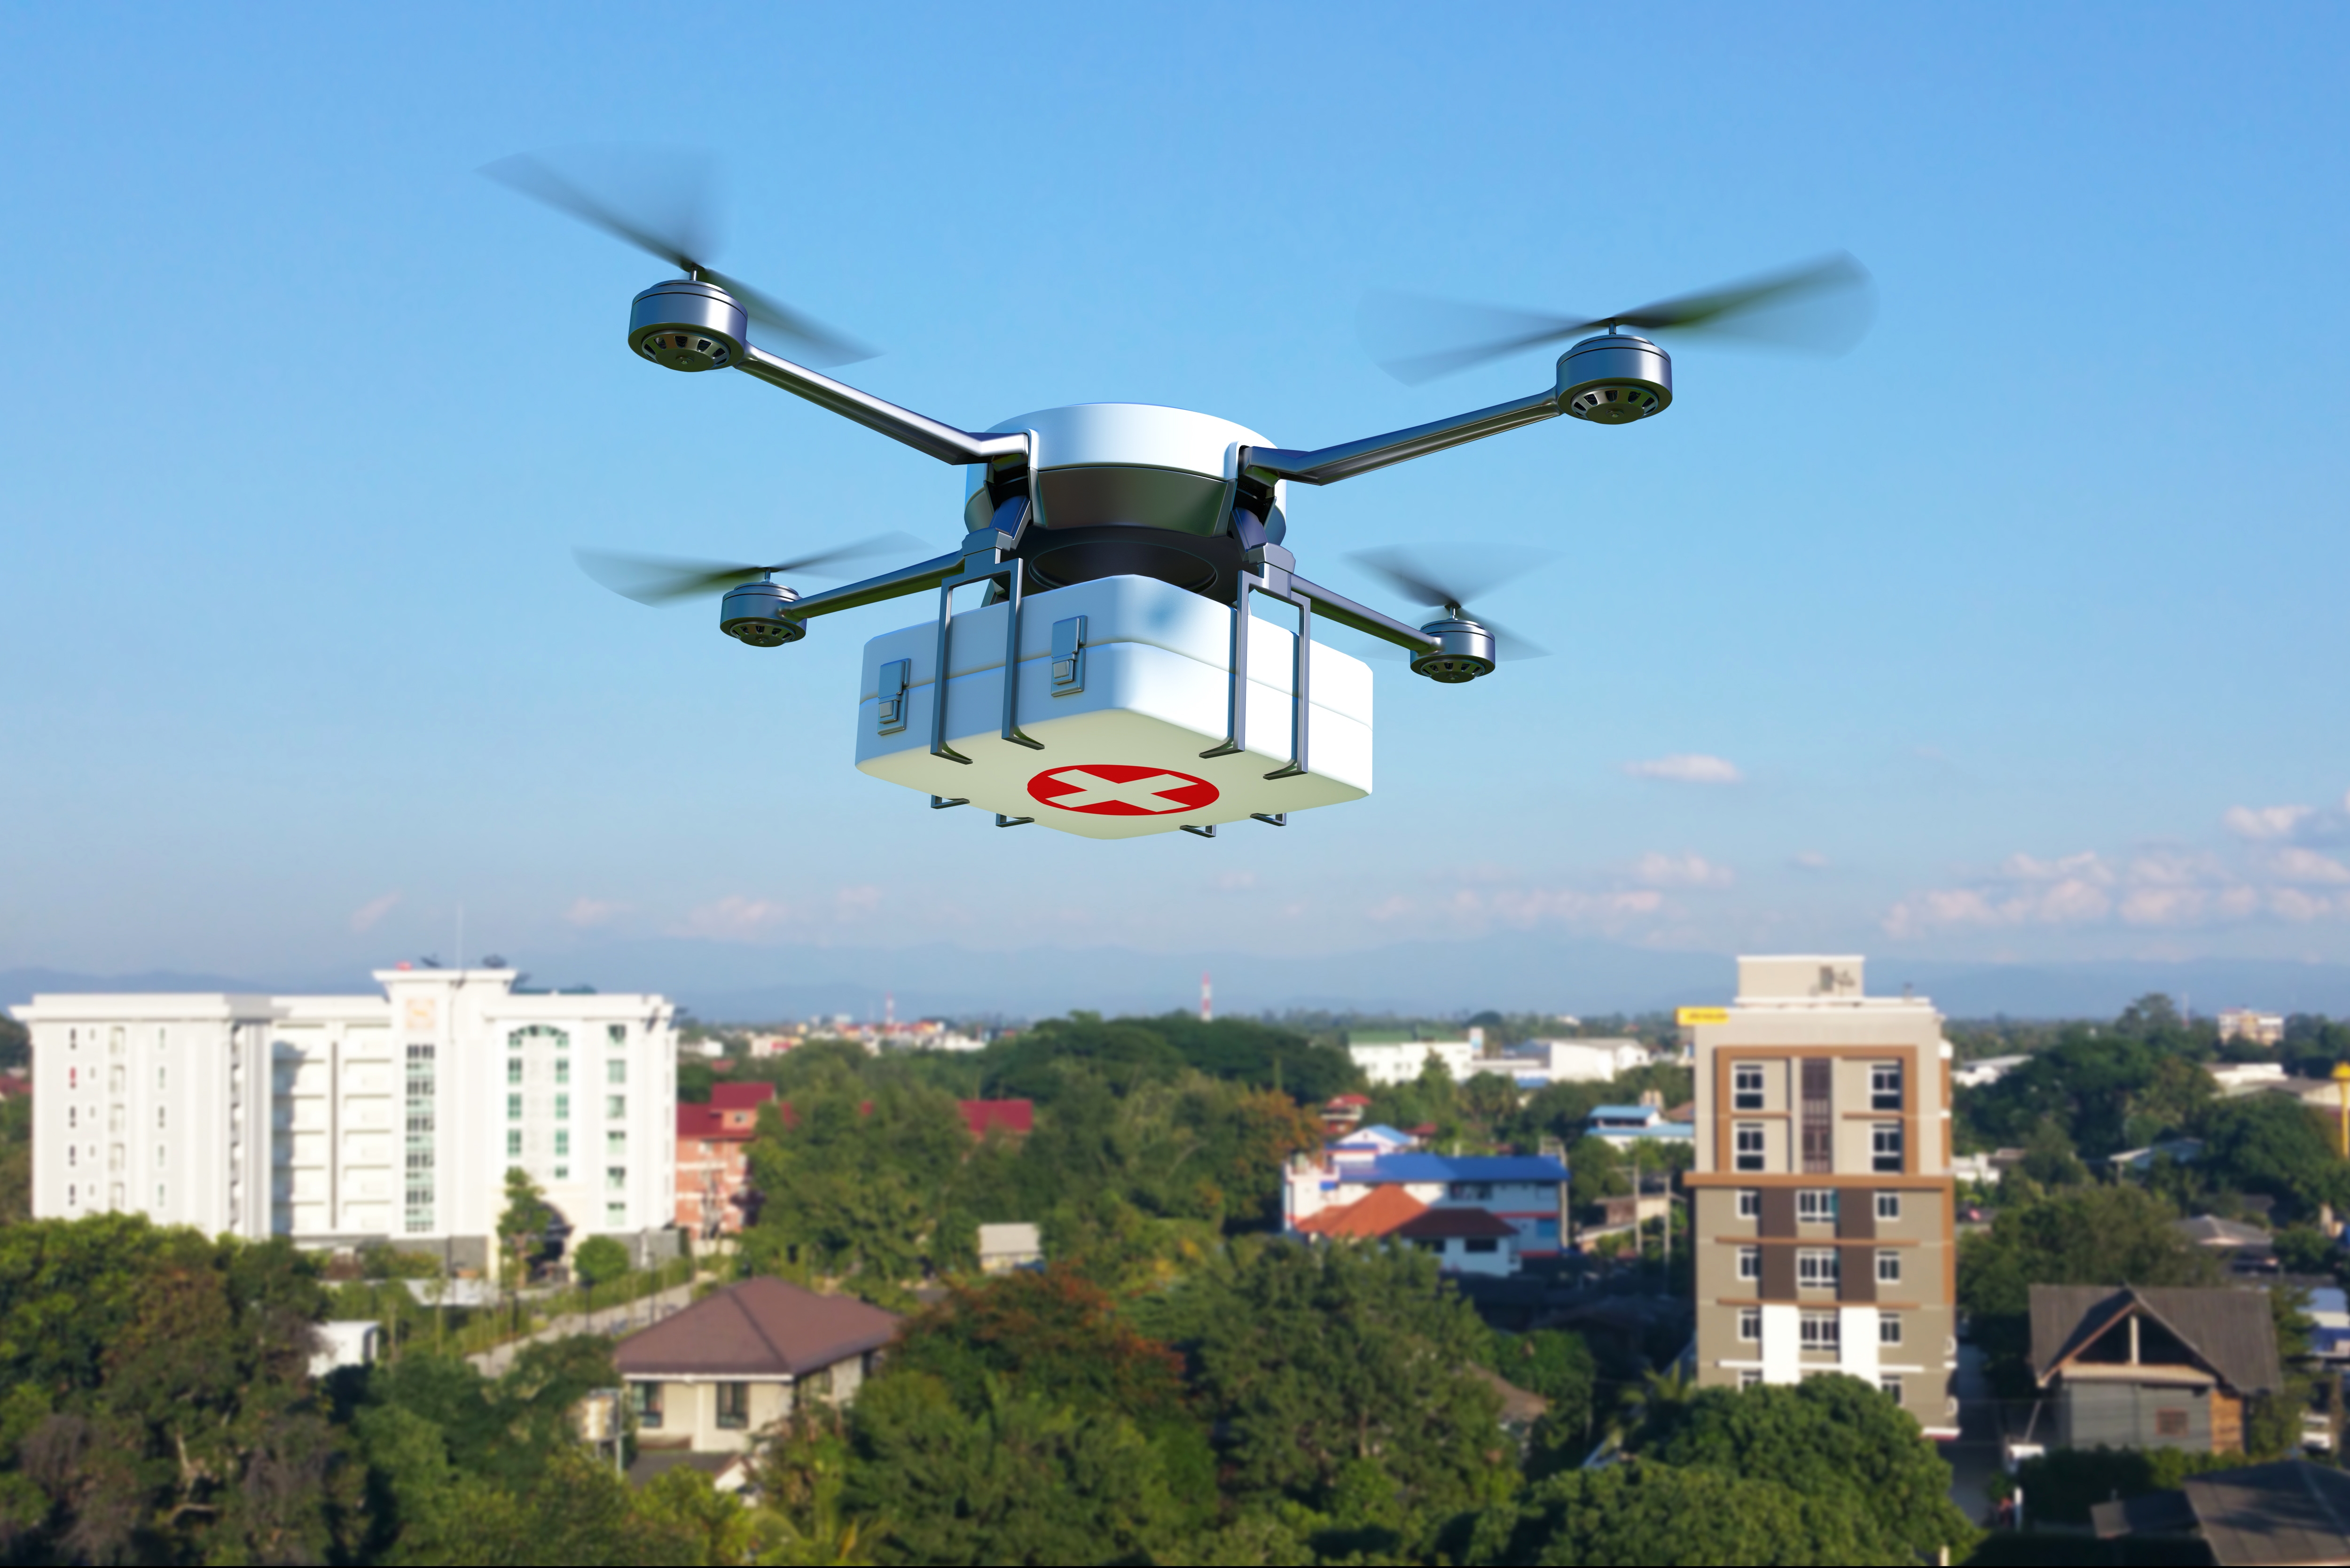 Proiect pilot unic în ţară - drone pentru transportul probelor biologice între unităţile medicale